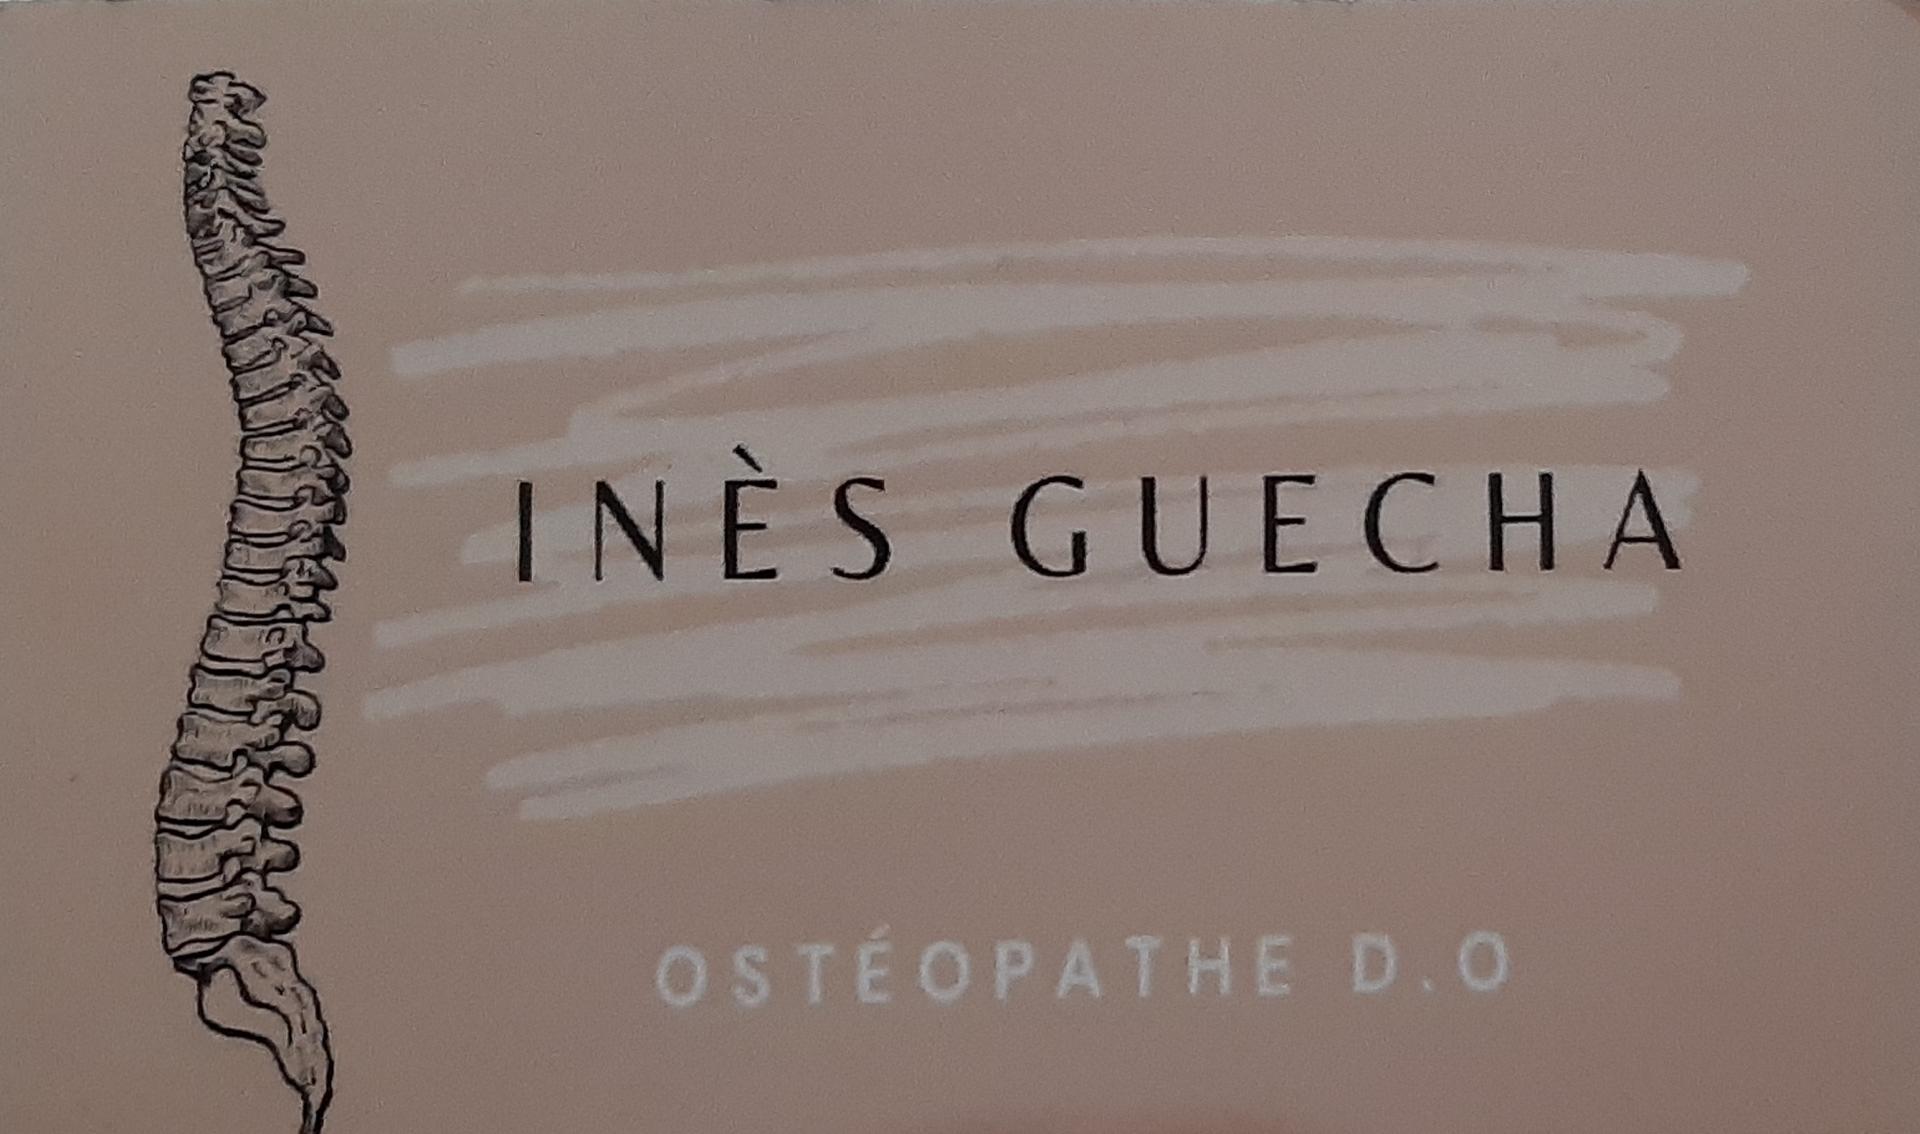 Inès Guecha Ostéopathe